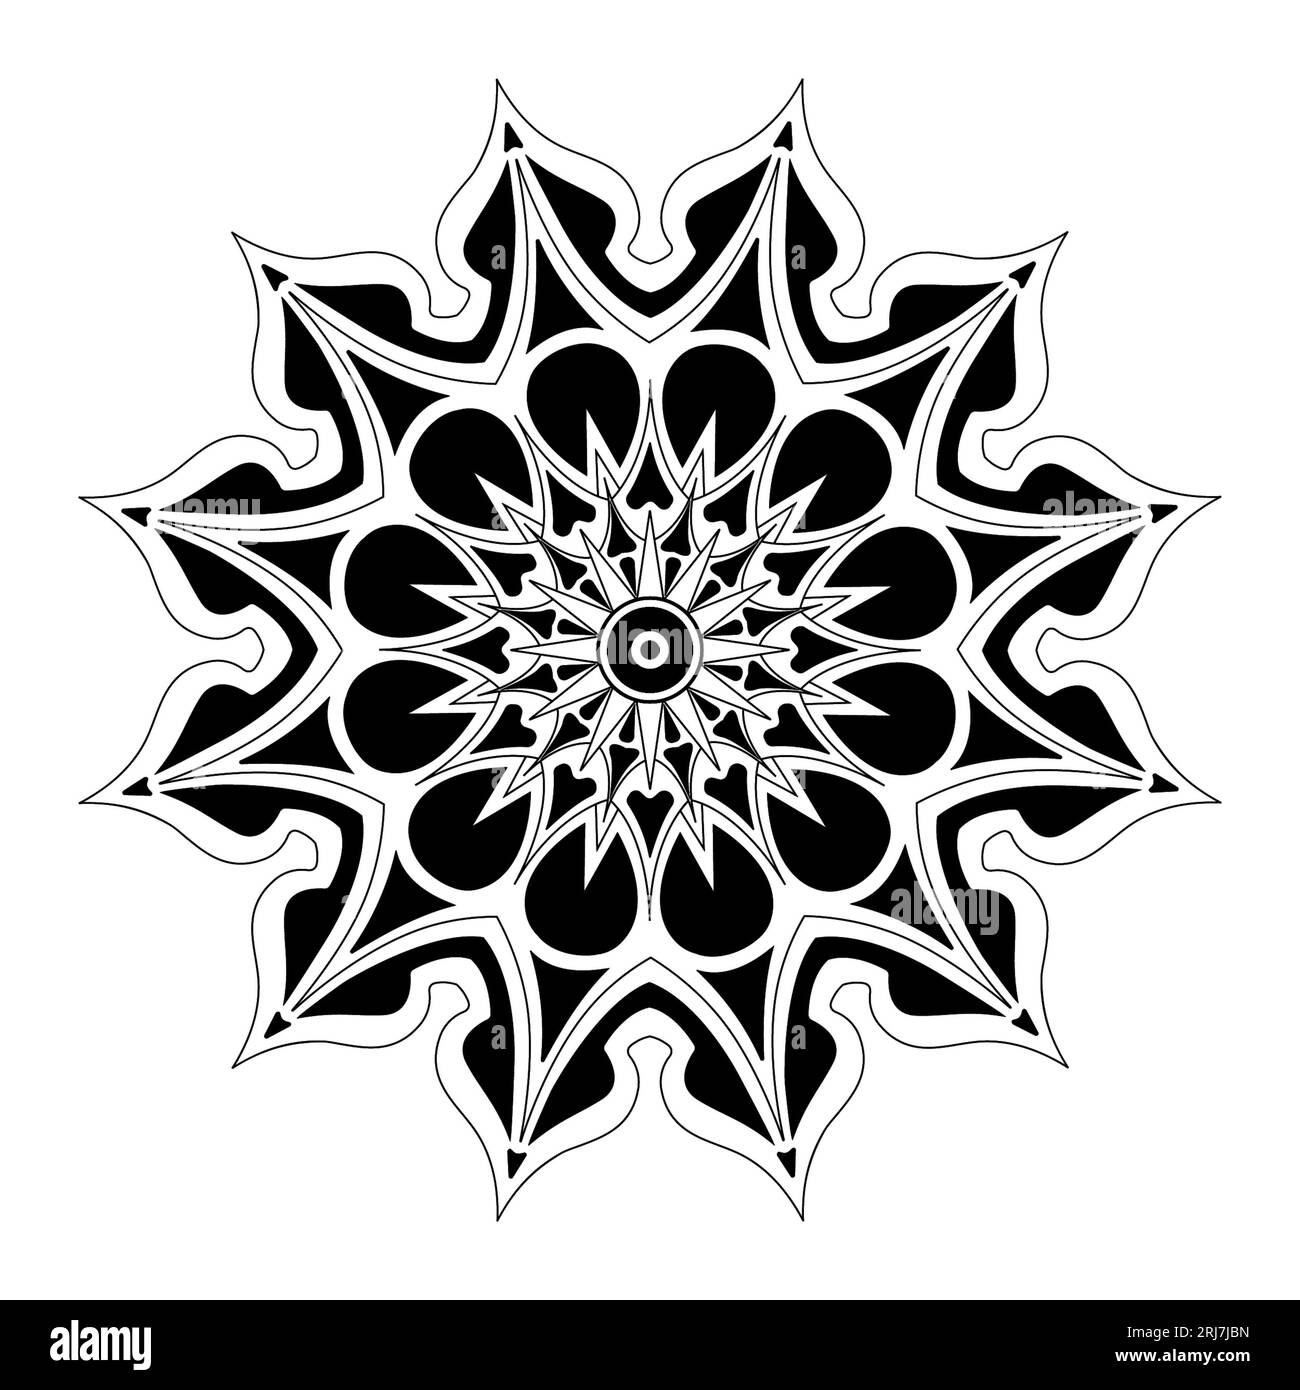 Dessin vectoriel Mandala simple dessiné à la main Banque D'Images